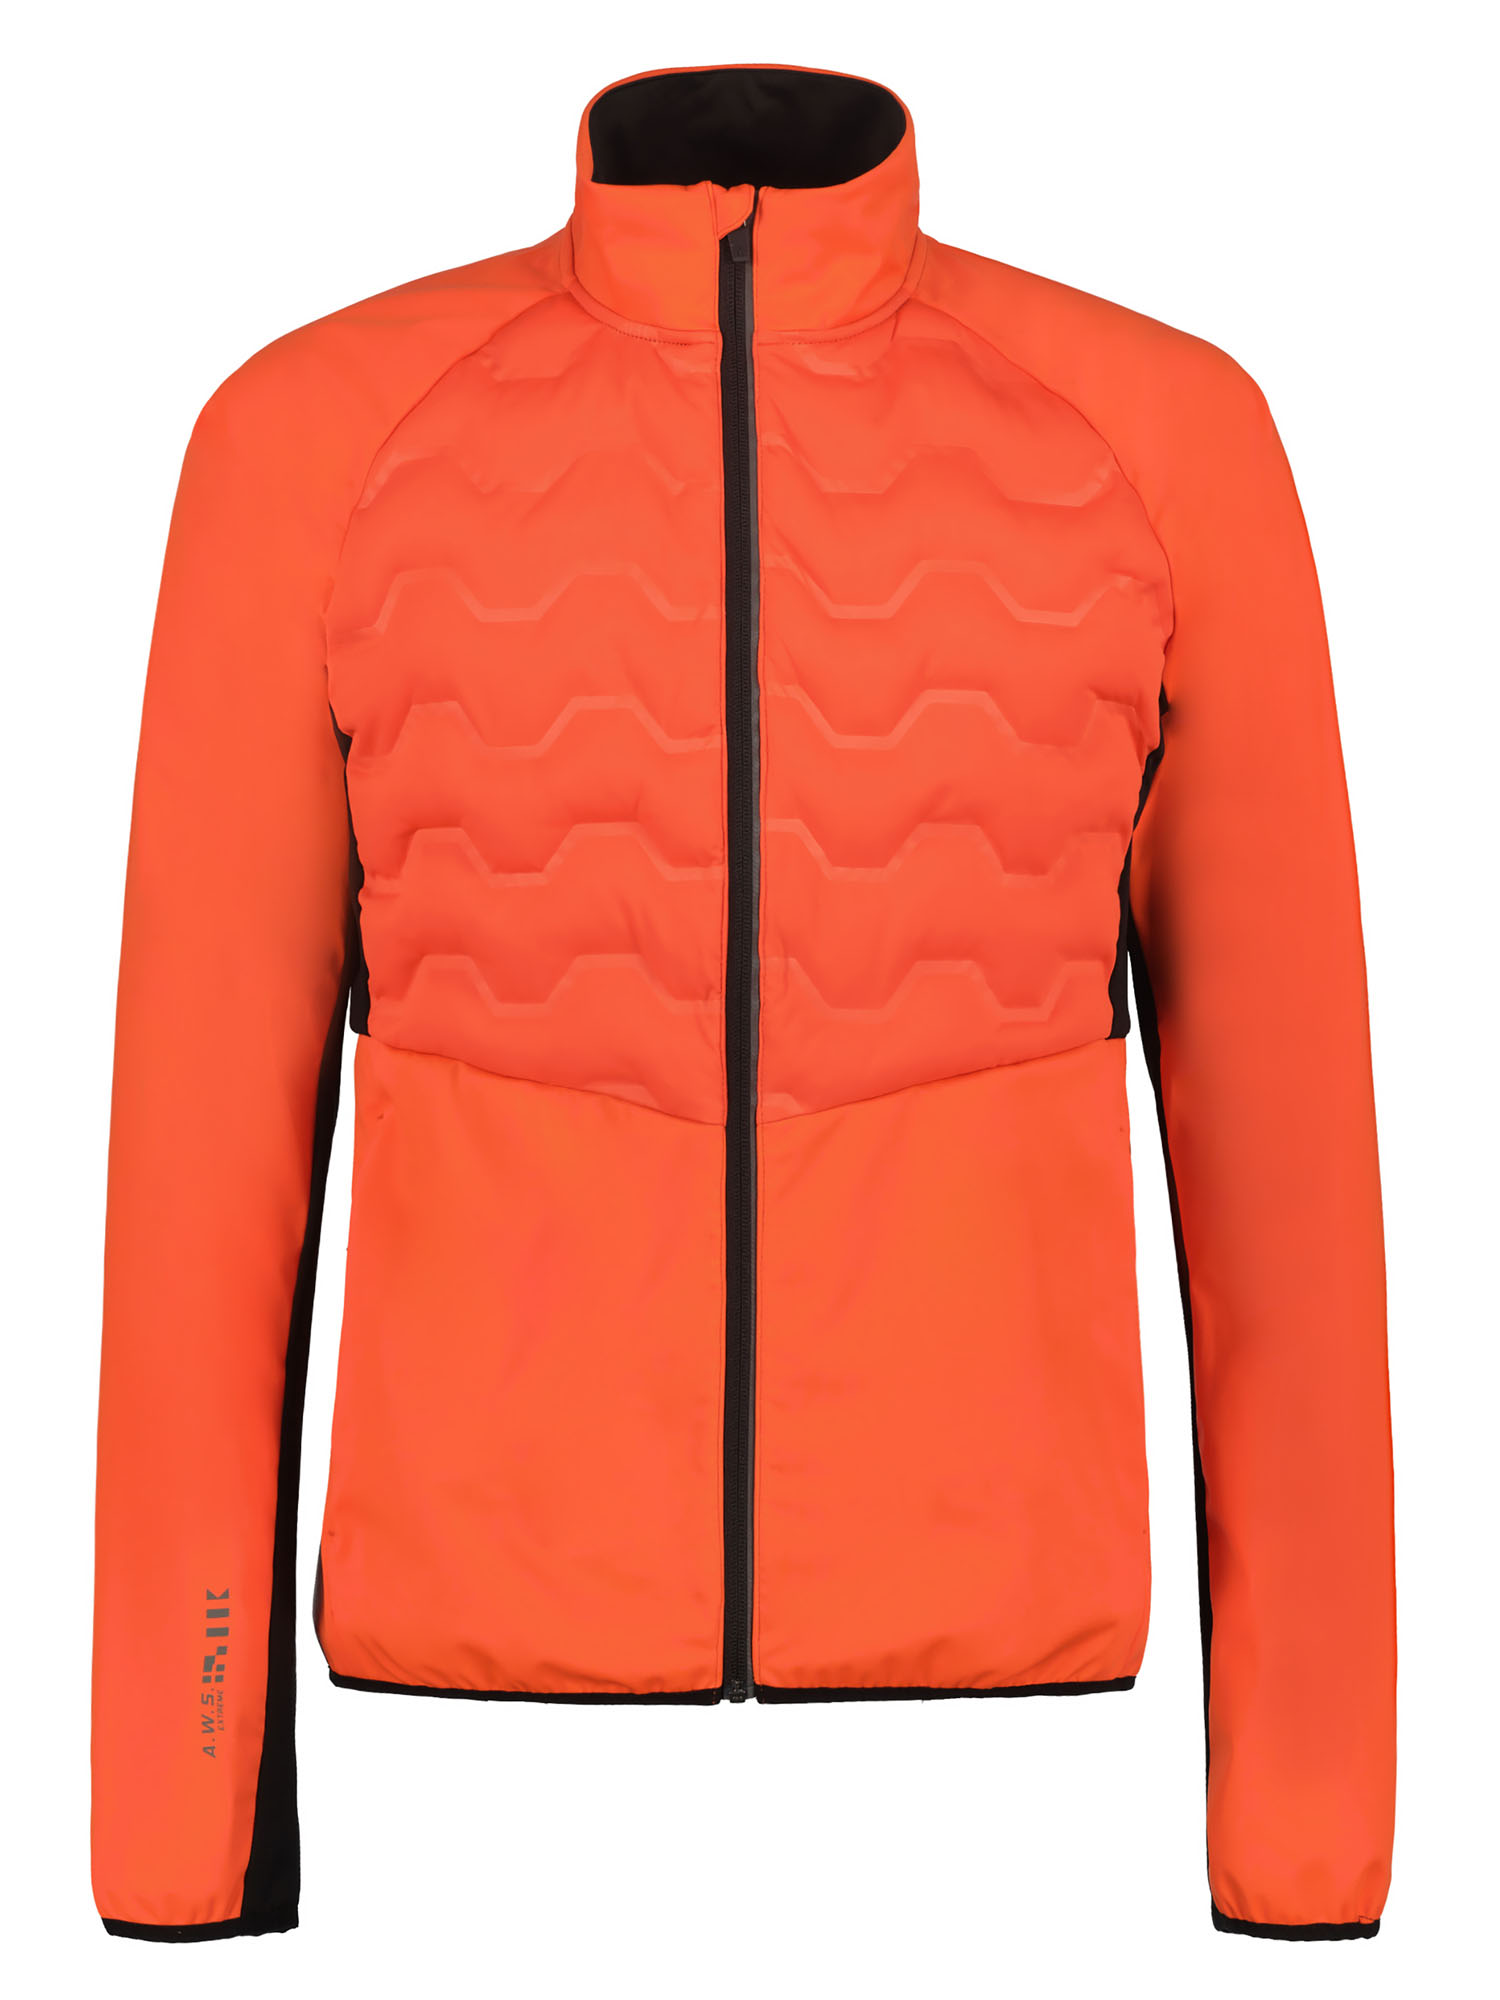 Спортивная куртка мужская Rukka Muska оранжевая S